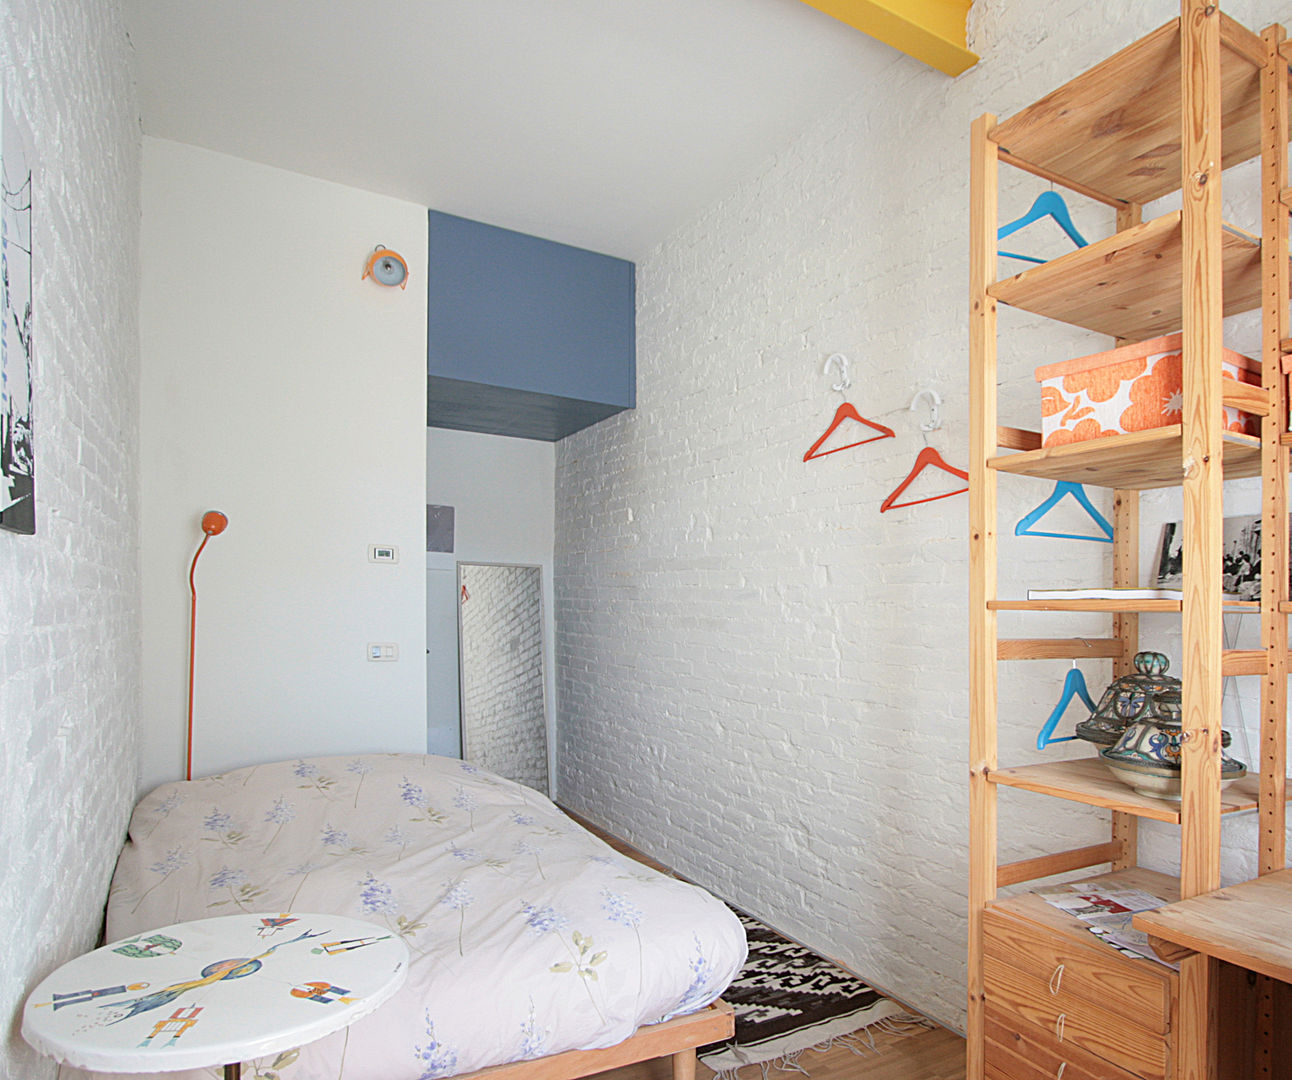 Ristrutturazione Appartamento - Bed and breakfast, Studio Dalla Vecchia Architetti Studio Dalla Vecchia Architetti Small bedroom Concrete